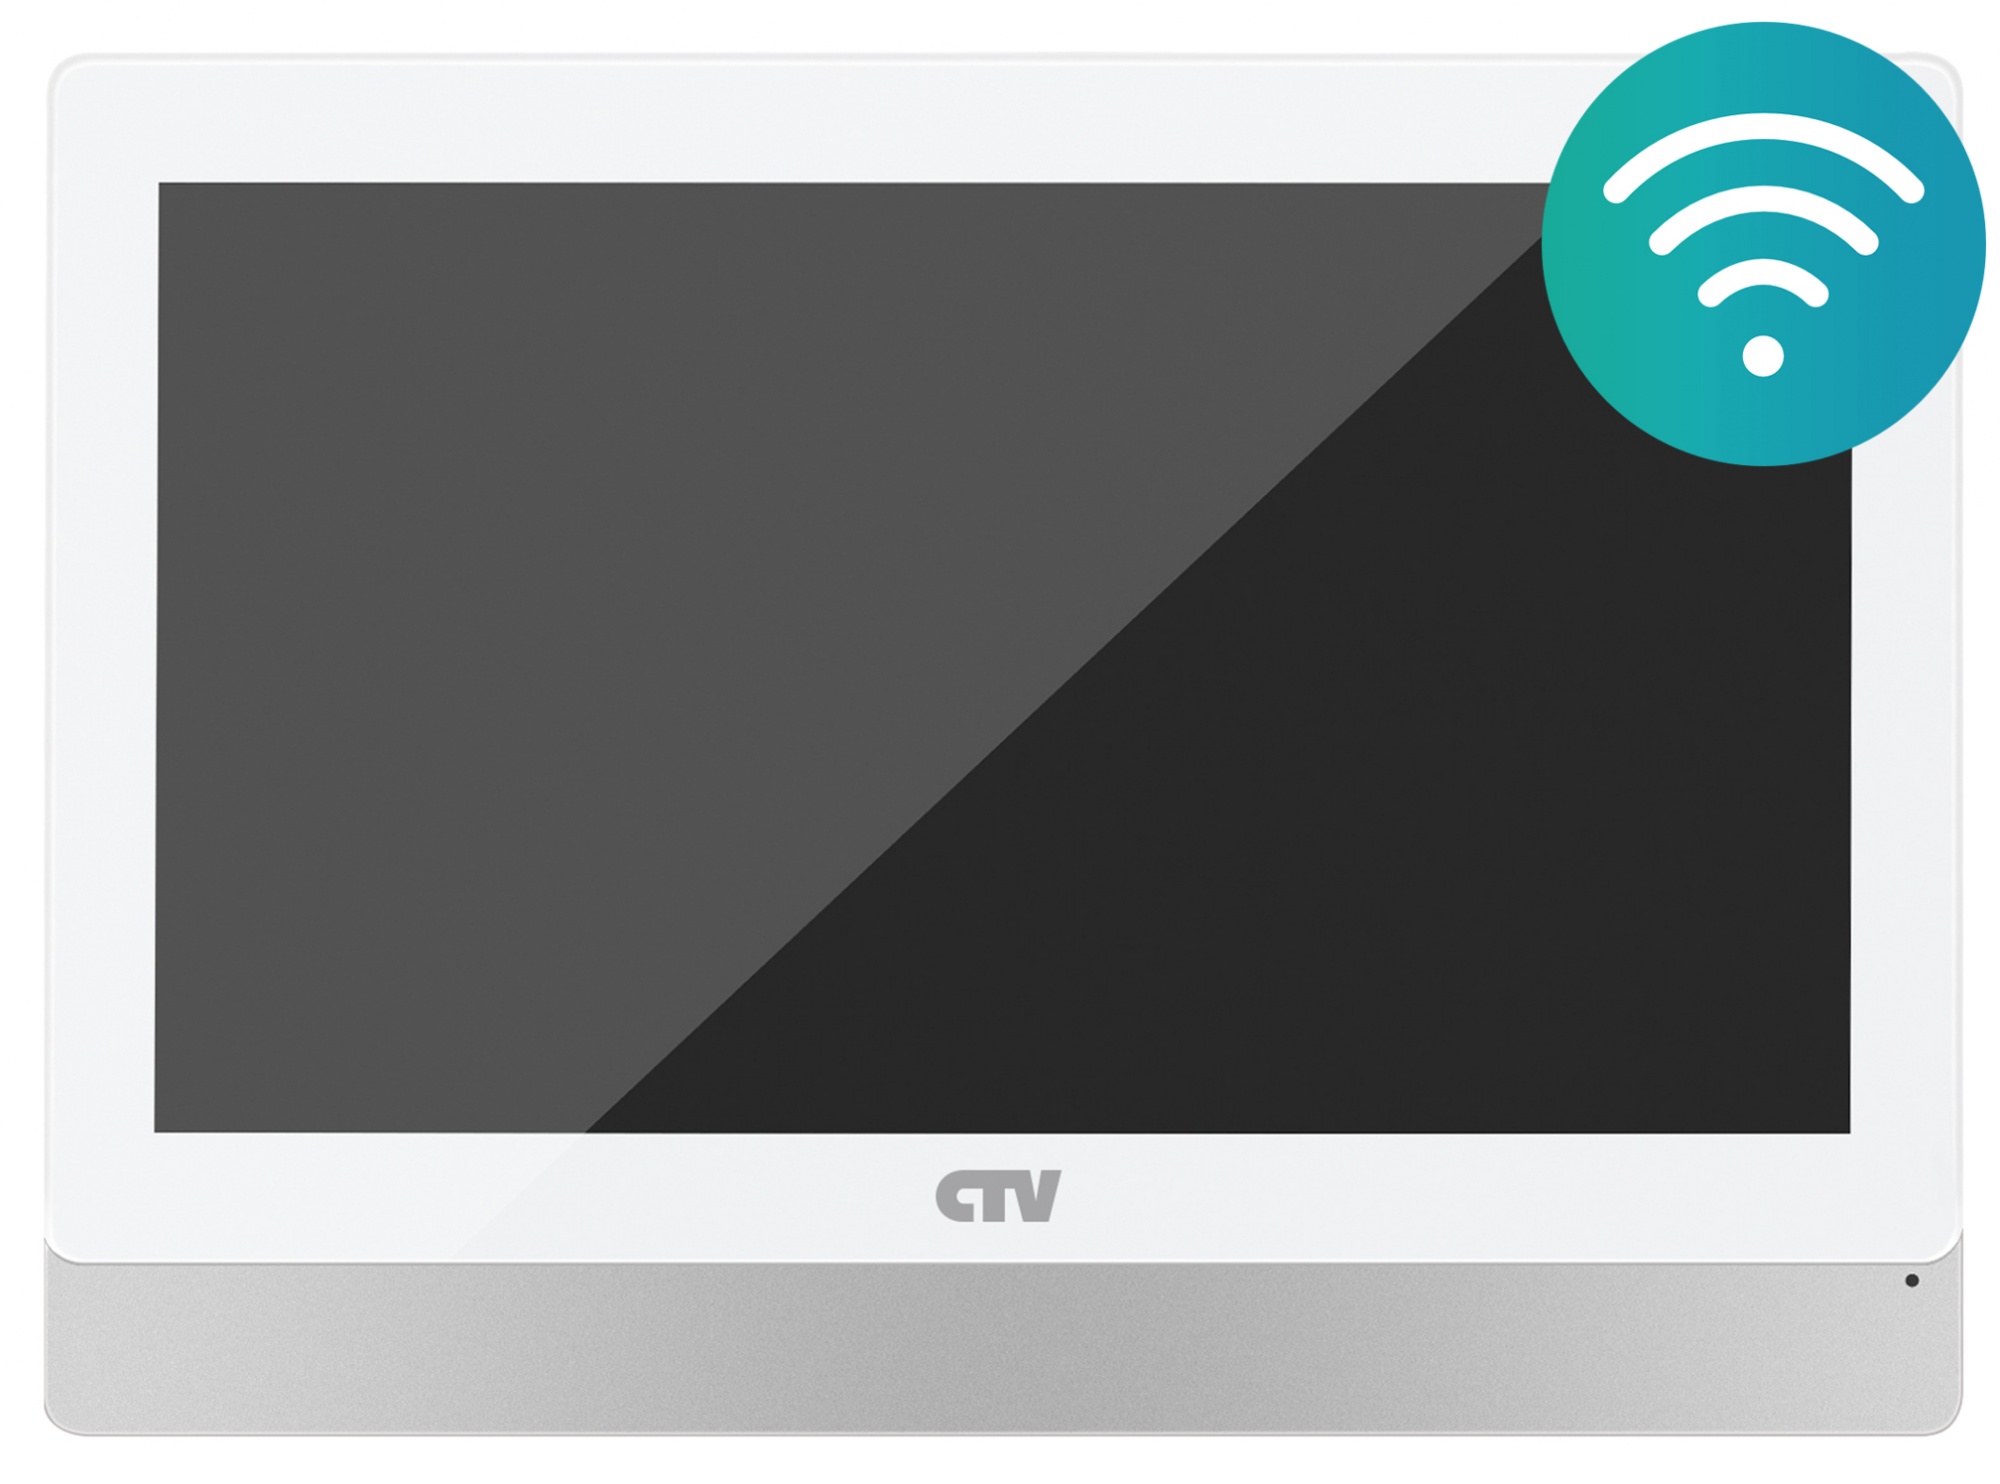 Купить монитор видеодомофона "ctv" цветной ctv-m5902 w белый (экран 9"/22,9см, разрешение 1024*600, full hd, встроенный модуль wi-fi, сенсор.управление,видеоархив в "облаке", детектор движения) | КилоВатт